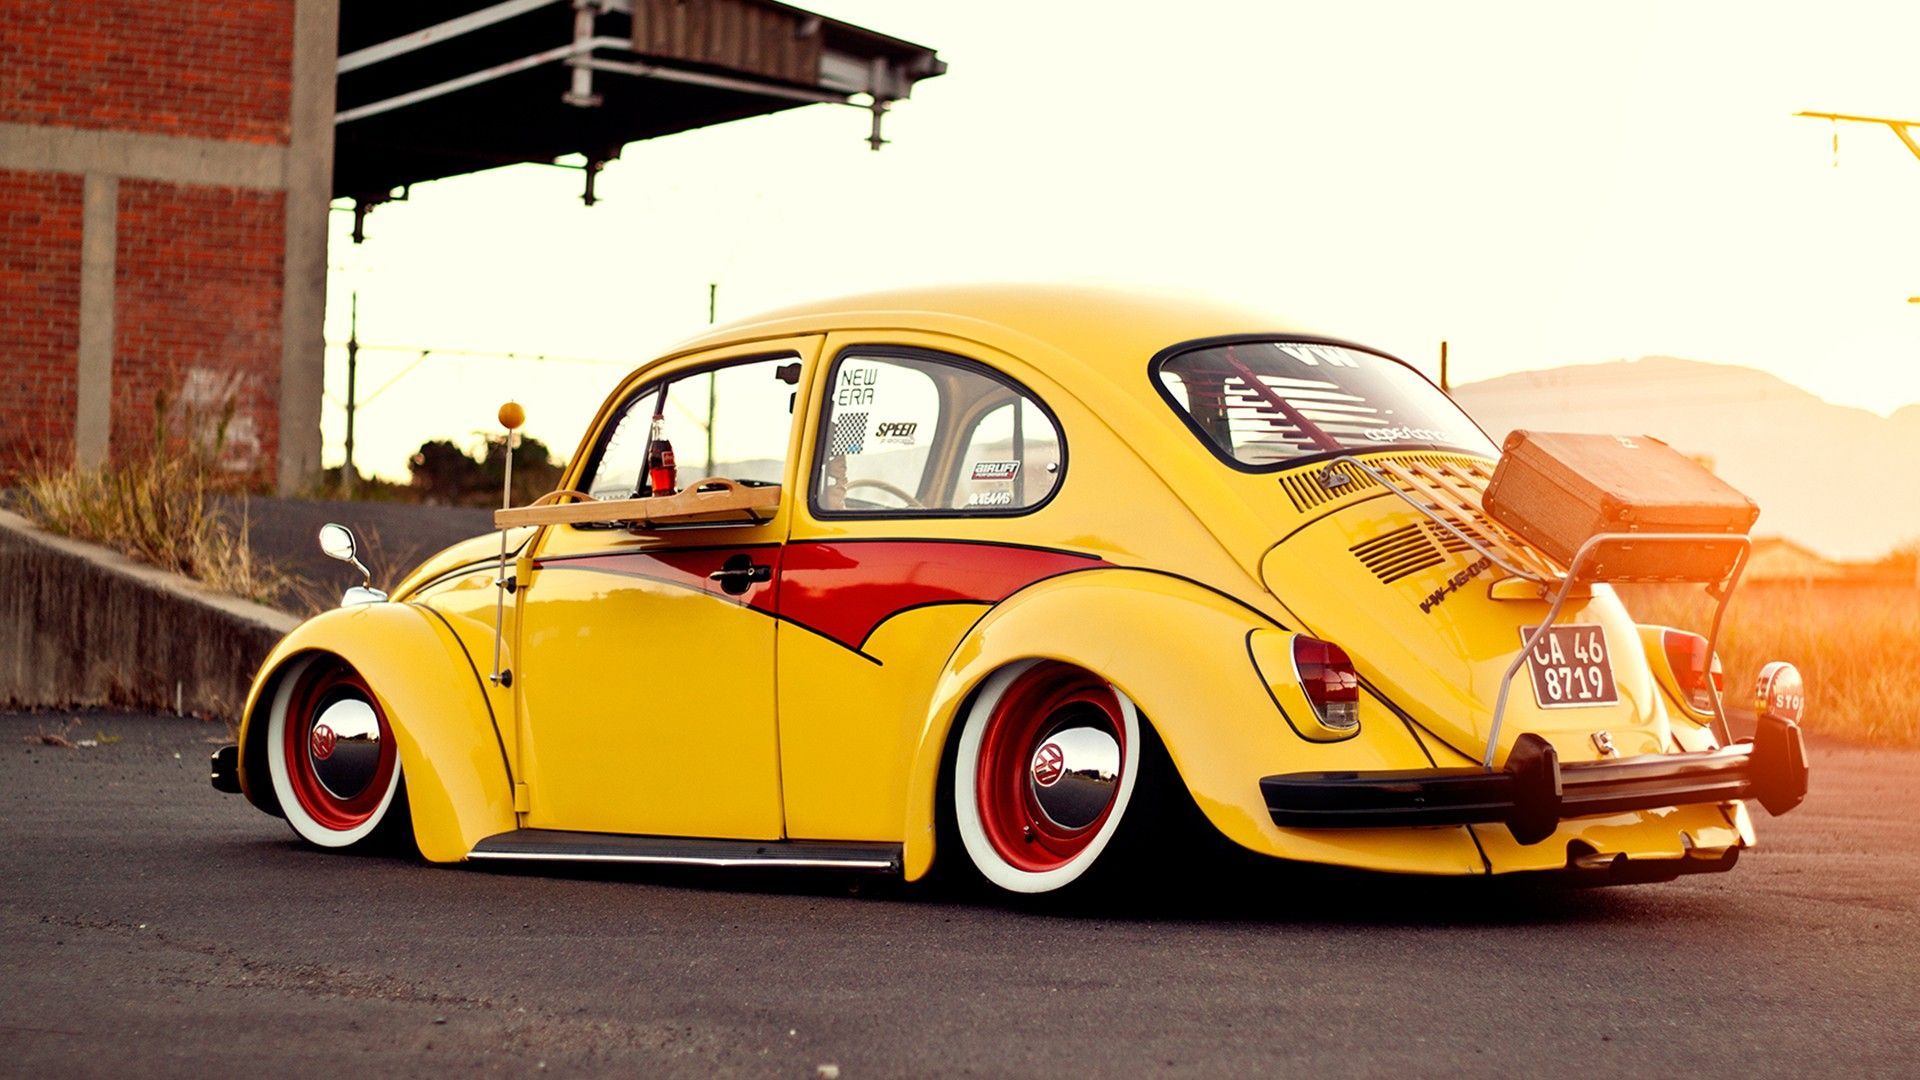 Volkswagen Beetle Gsr Wallpapers